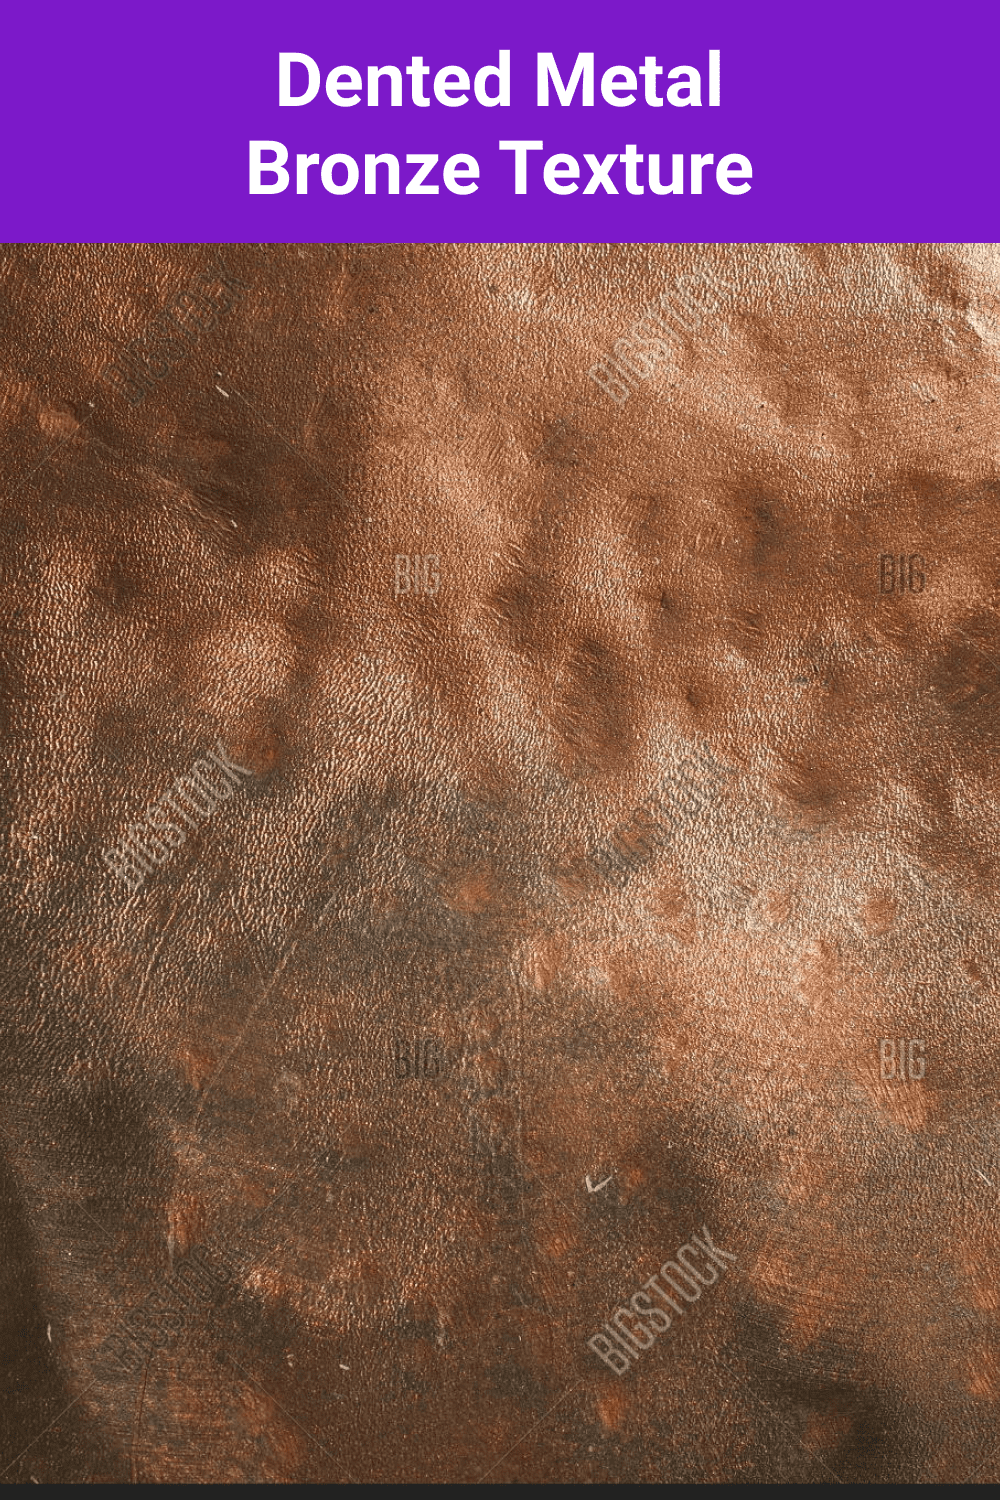 Dented Metal Bronze Texture.